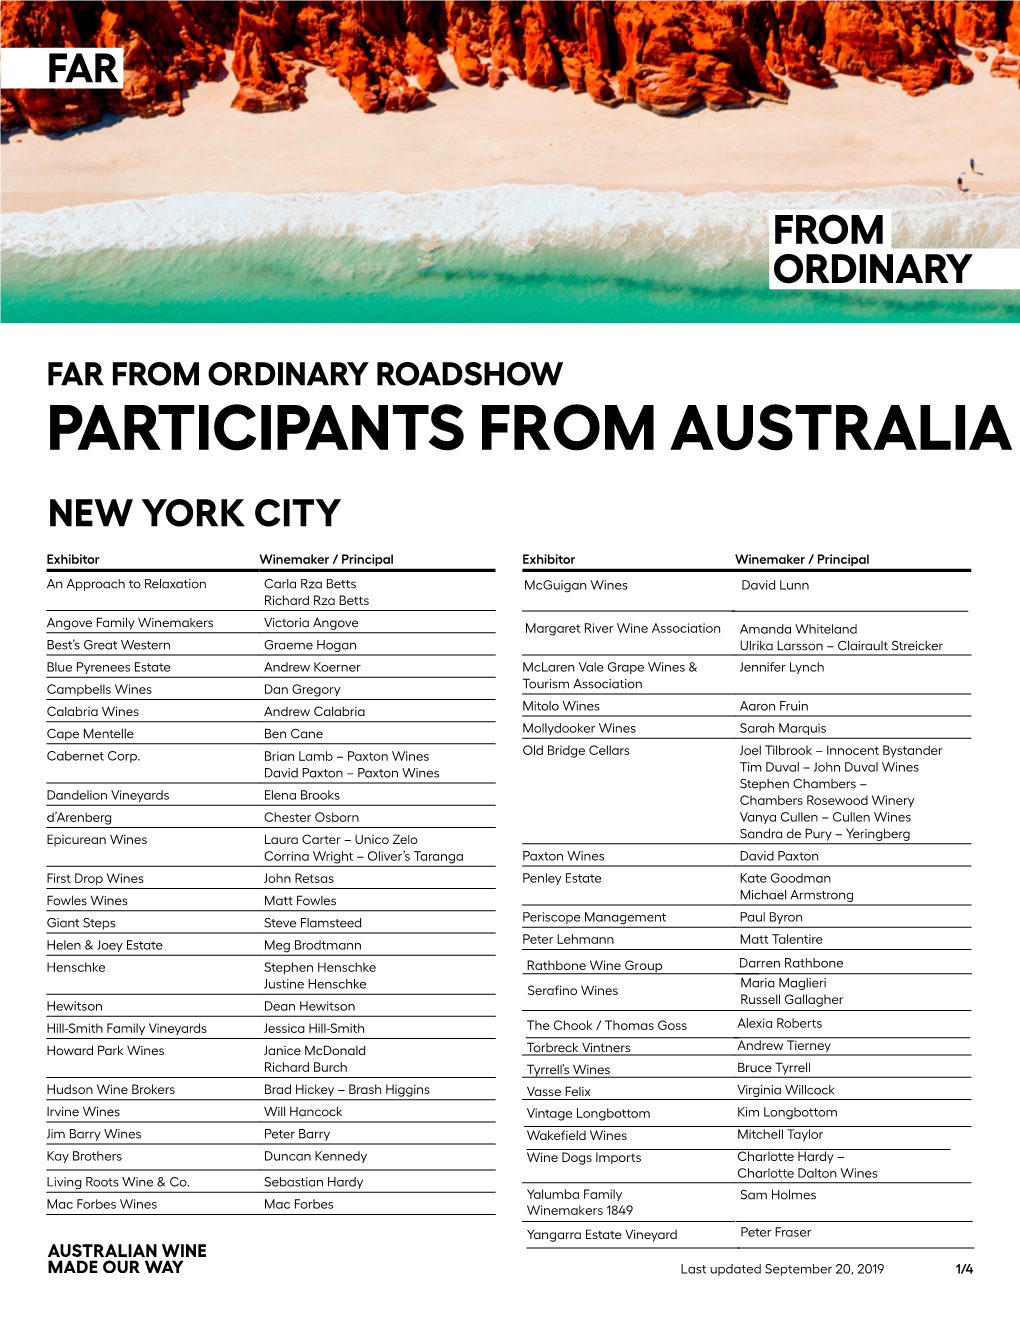 New York Participant List